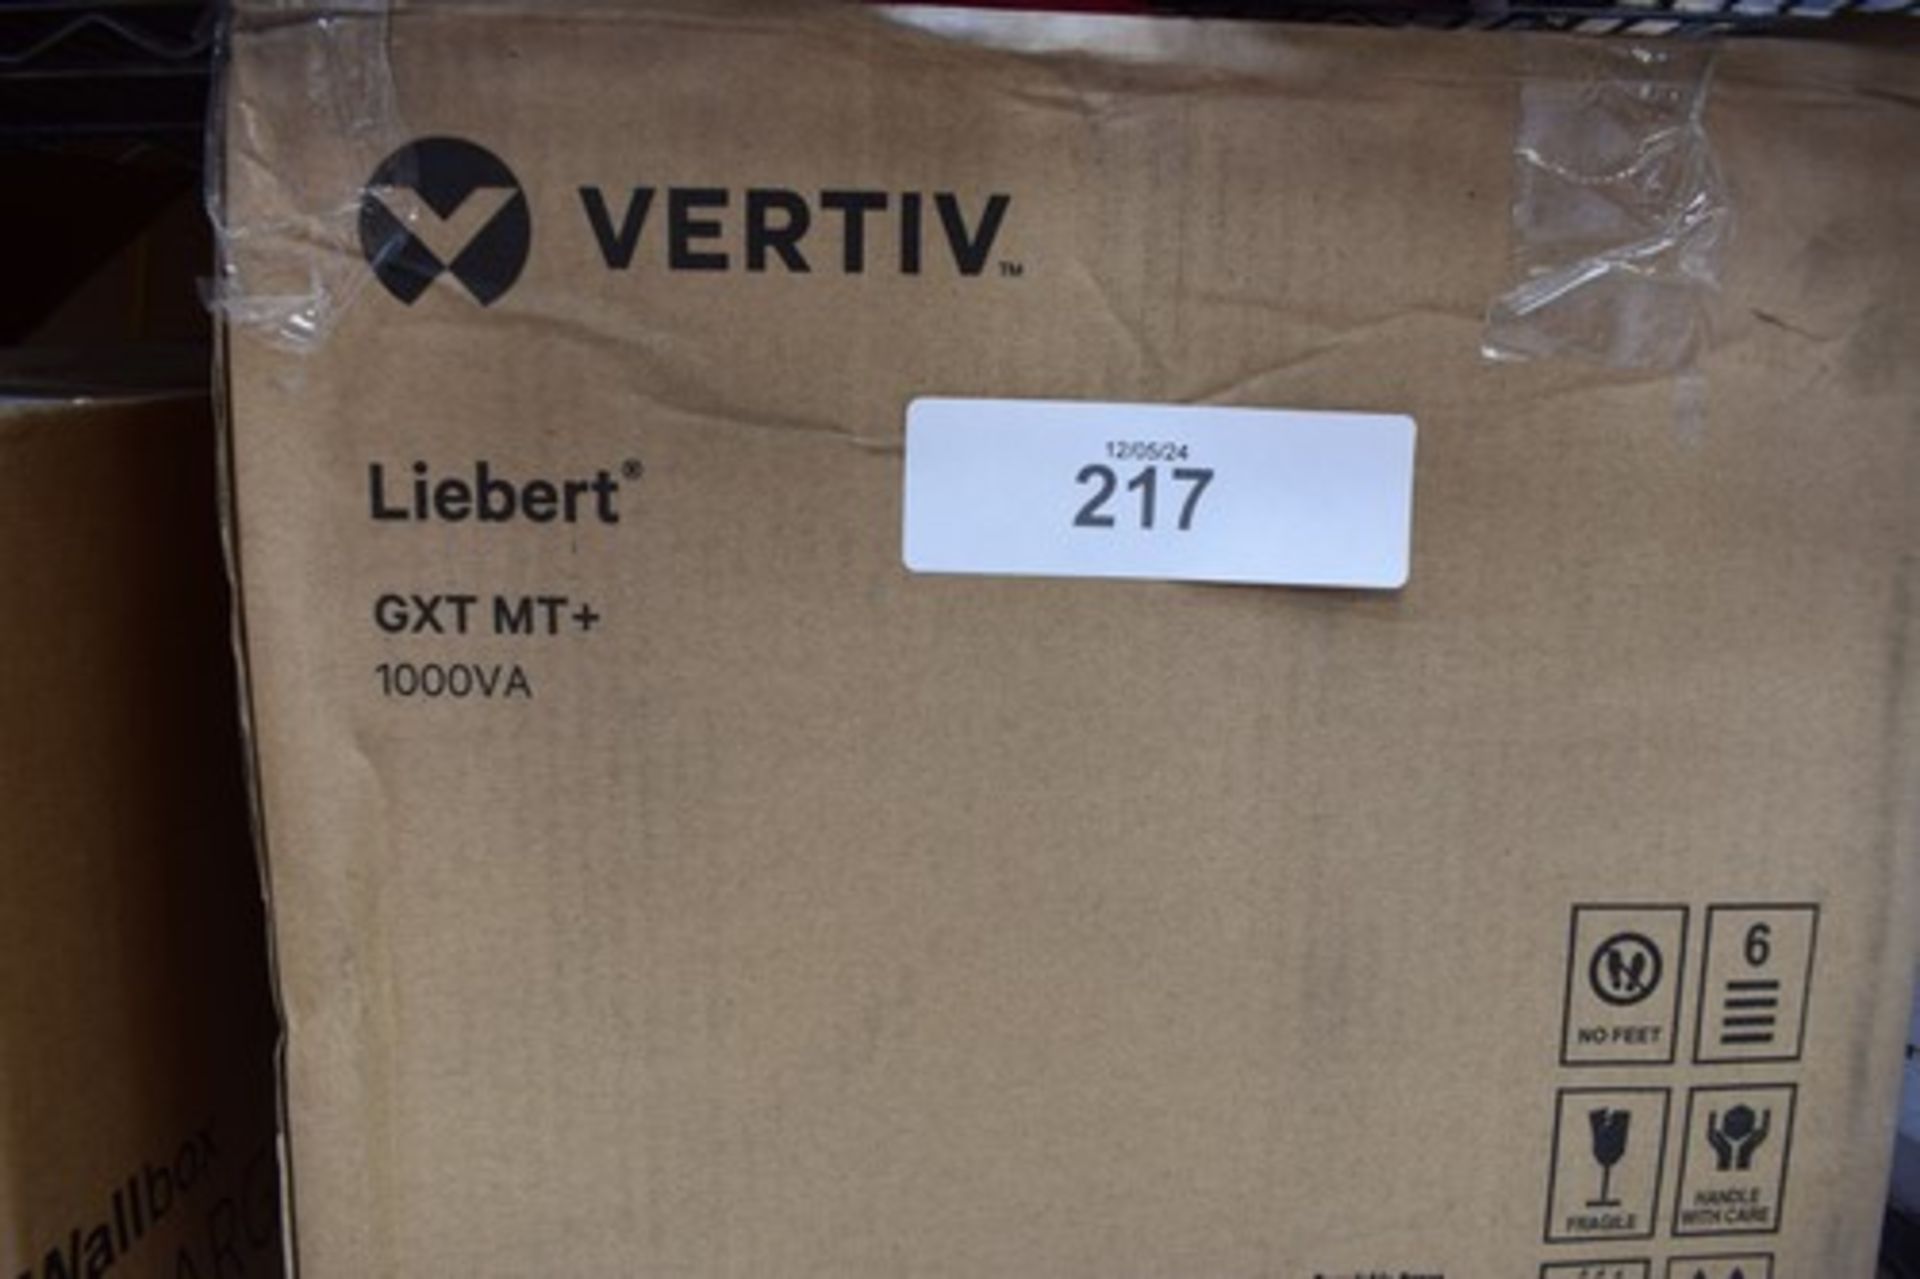 1 x Vertiv Liebert GXT MT= 1000VA unit mover - New in box (ES14) - Image 2 of 4